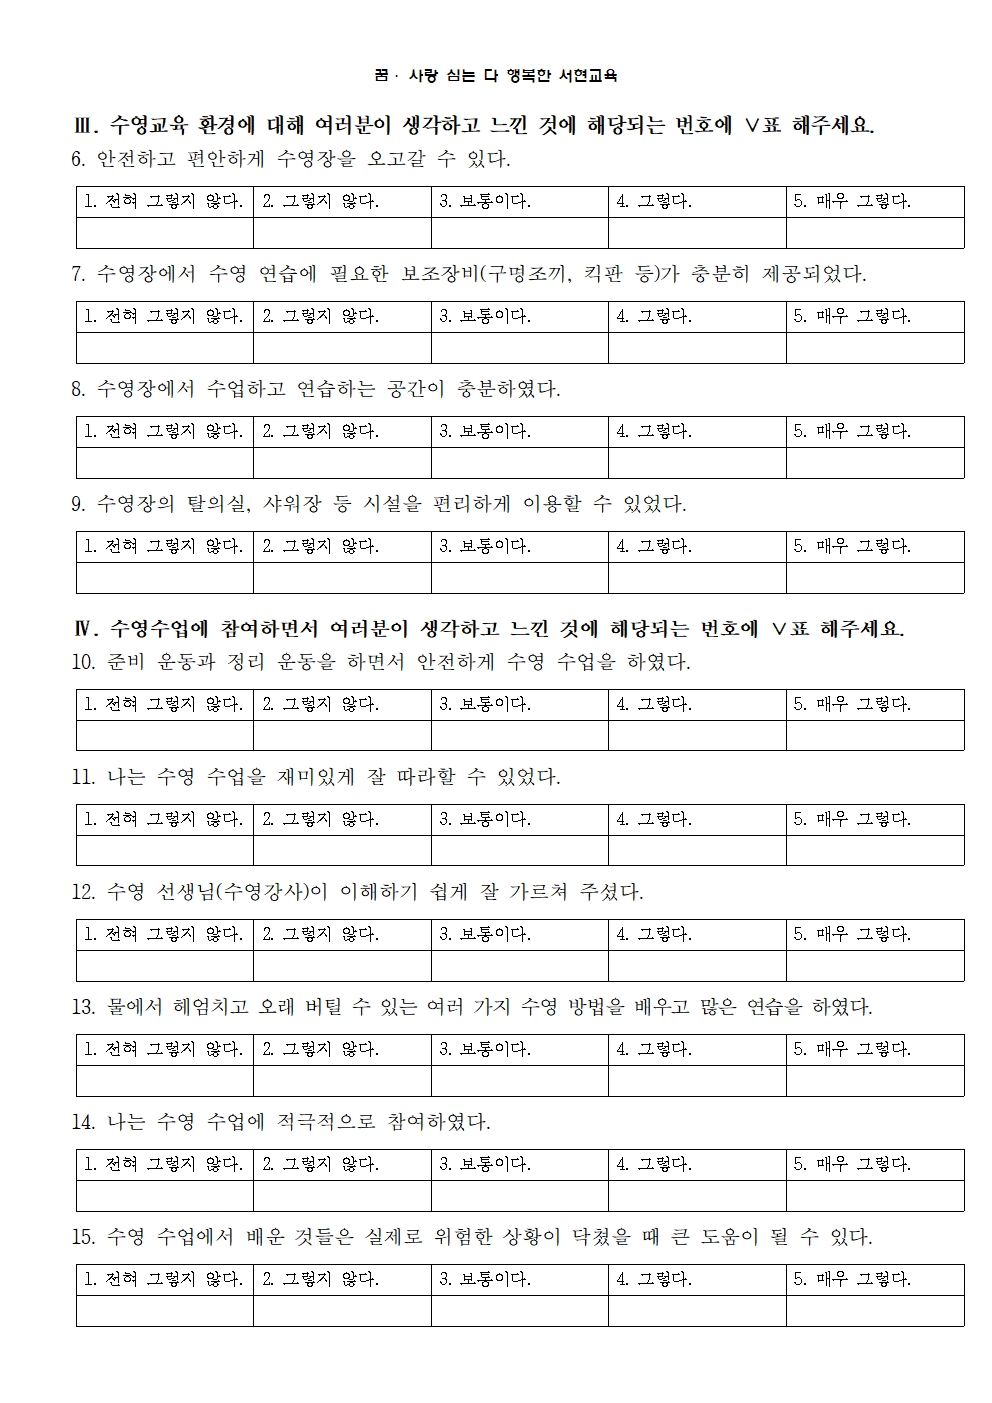 2019. 생존수영 실기교육 만족도 조사 안내장004